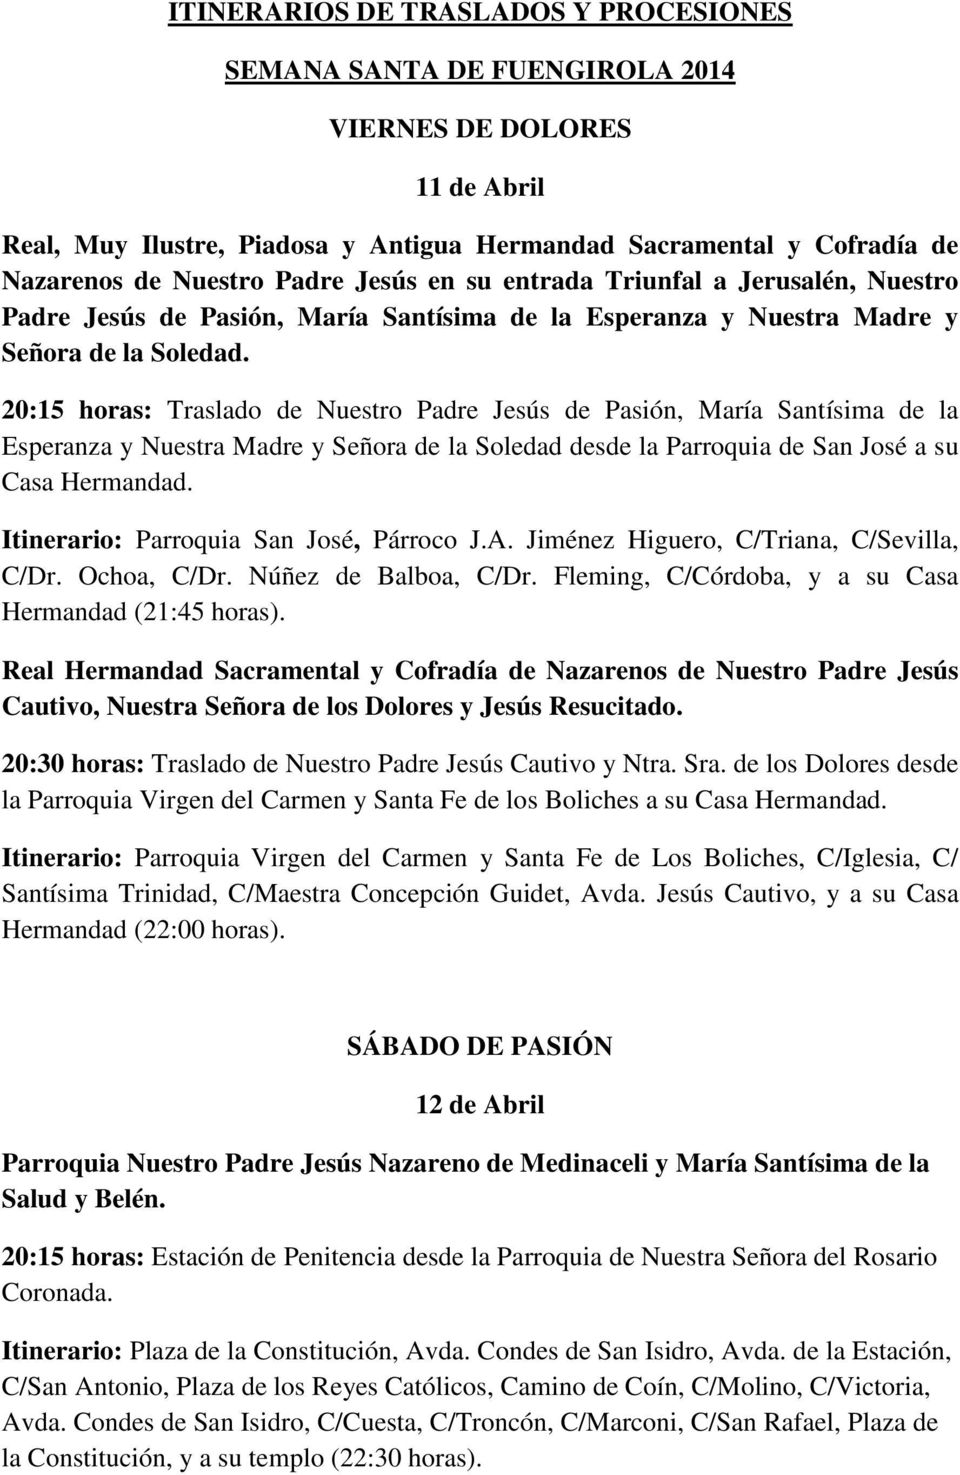 Itinerario: Parroquia San José, Párroco J.A. Jiménez Higuero, C/Triana, C/Sevilla, C/Dr. Ochoa, C/Dr. Núñez de Balboa, C/Dr. Fleming, C/Córdoba, y a su Casa Hermandad (21:45 horas).